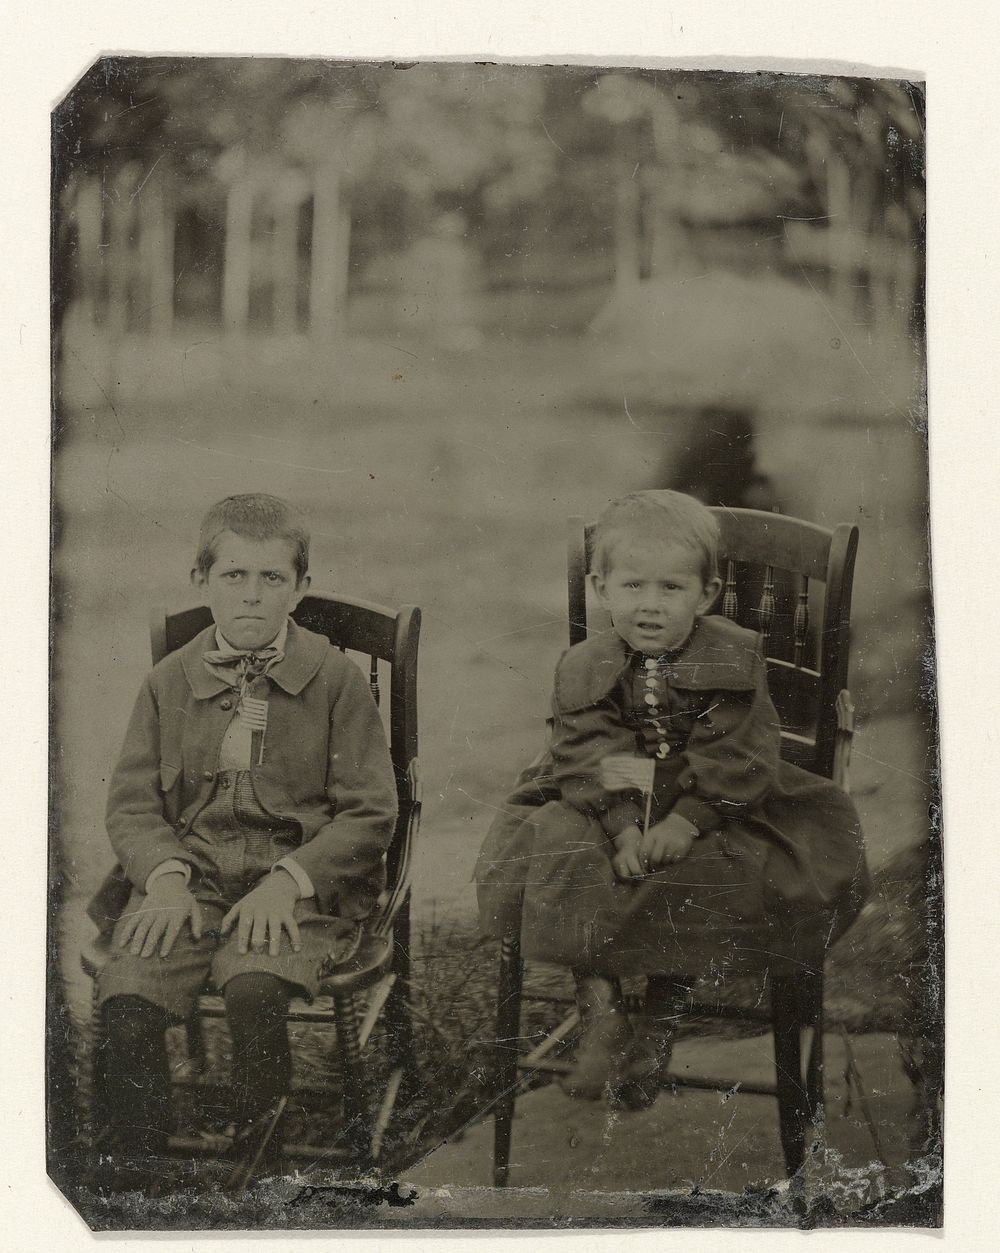 Portret van twee jongens, zittend op een stoel in een tuin of park (c. 1860 - c. 1900) by anonymous